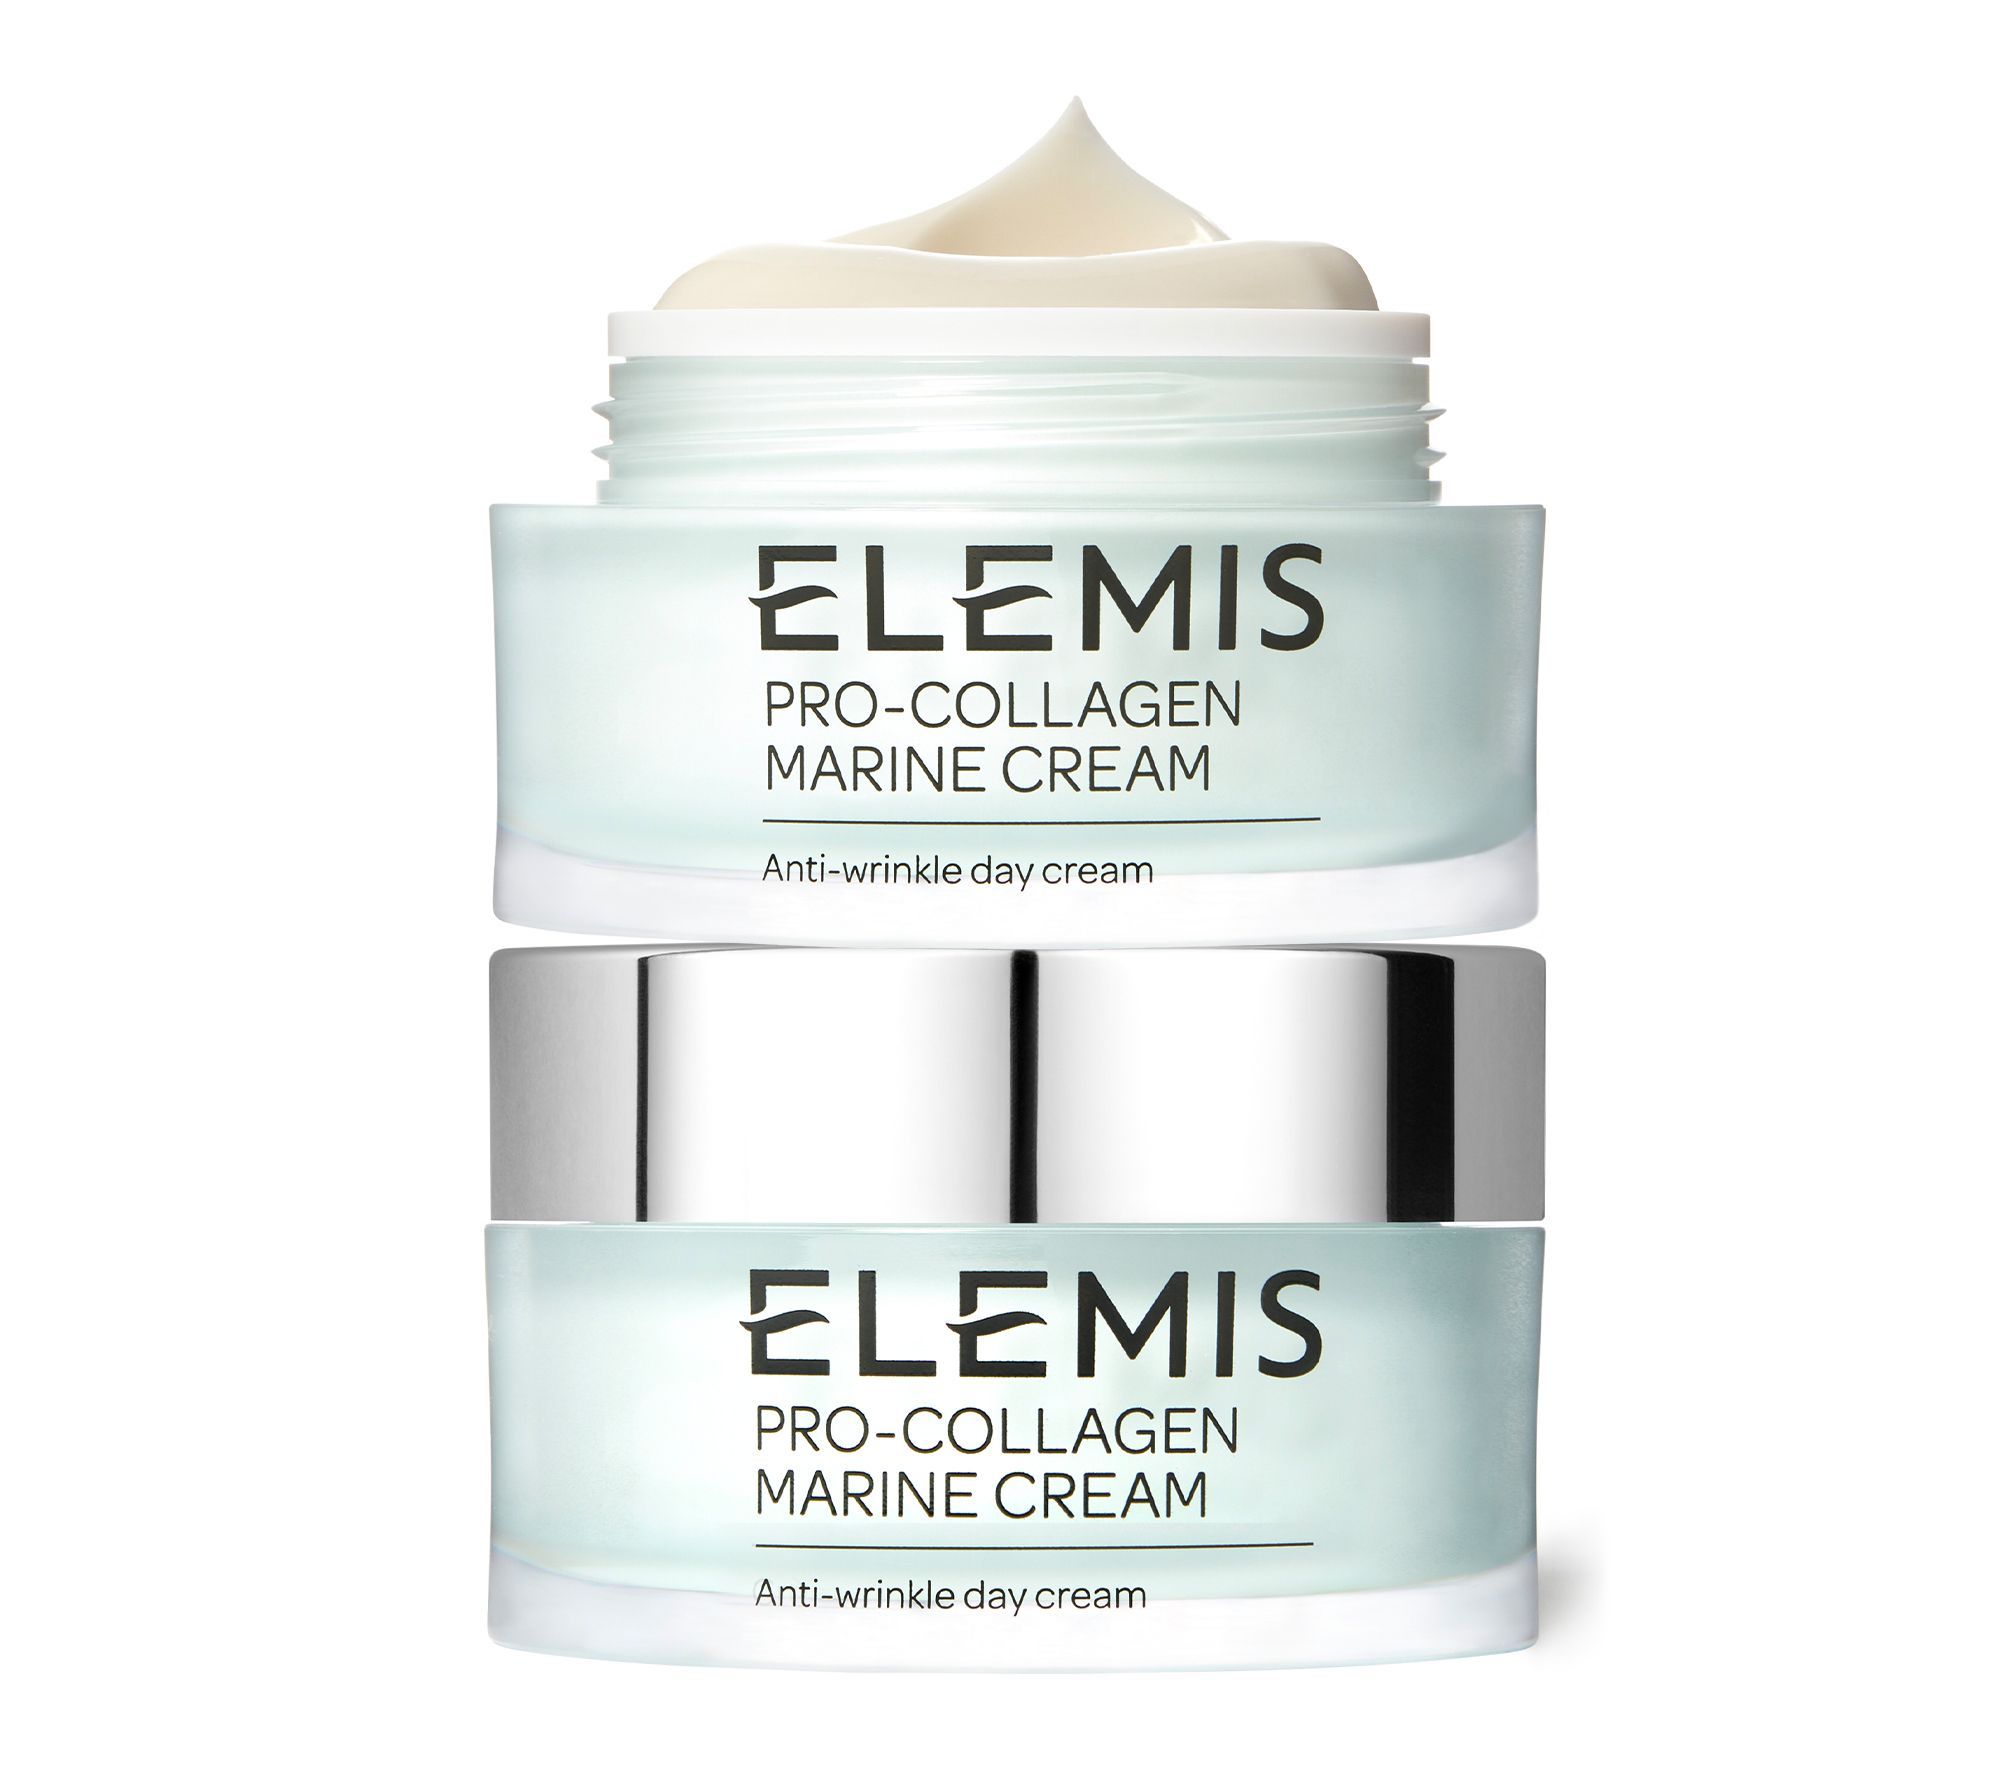 ELEMIS Pro-Collagen Marine Cream Duo Duo - QVC.com | QVC